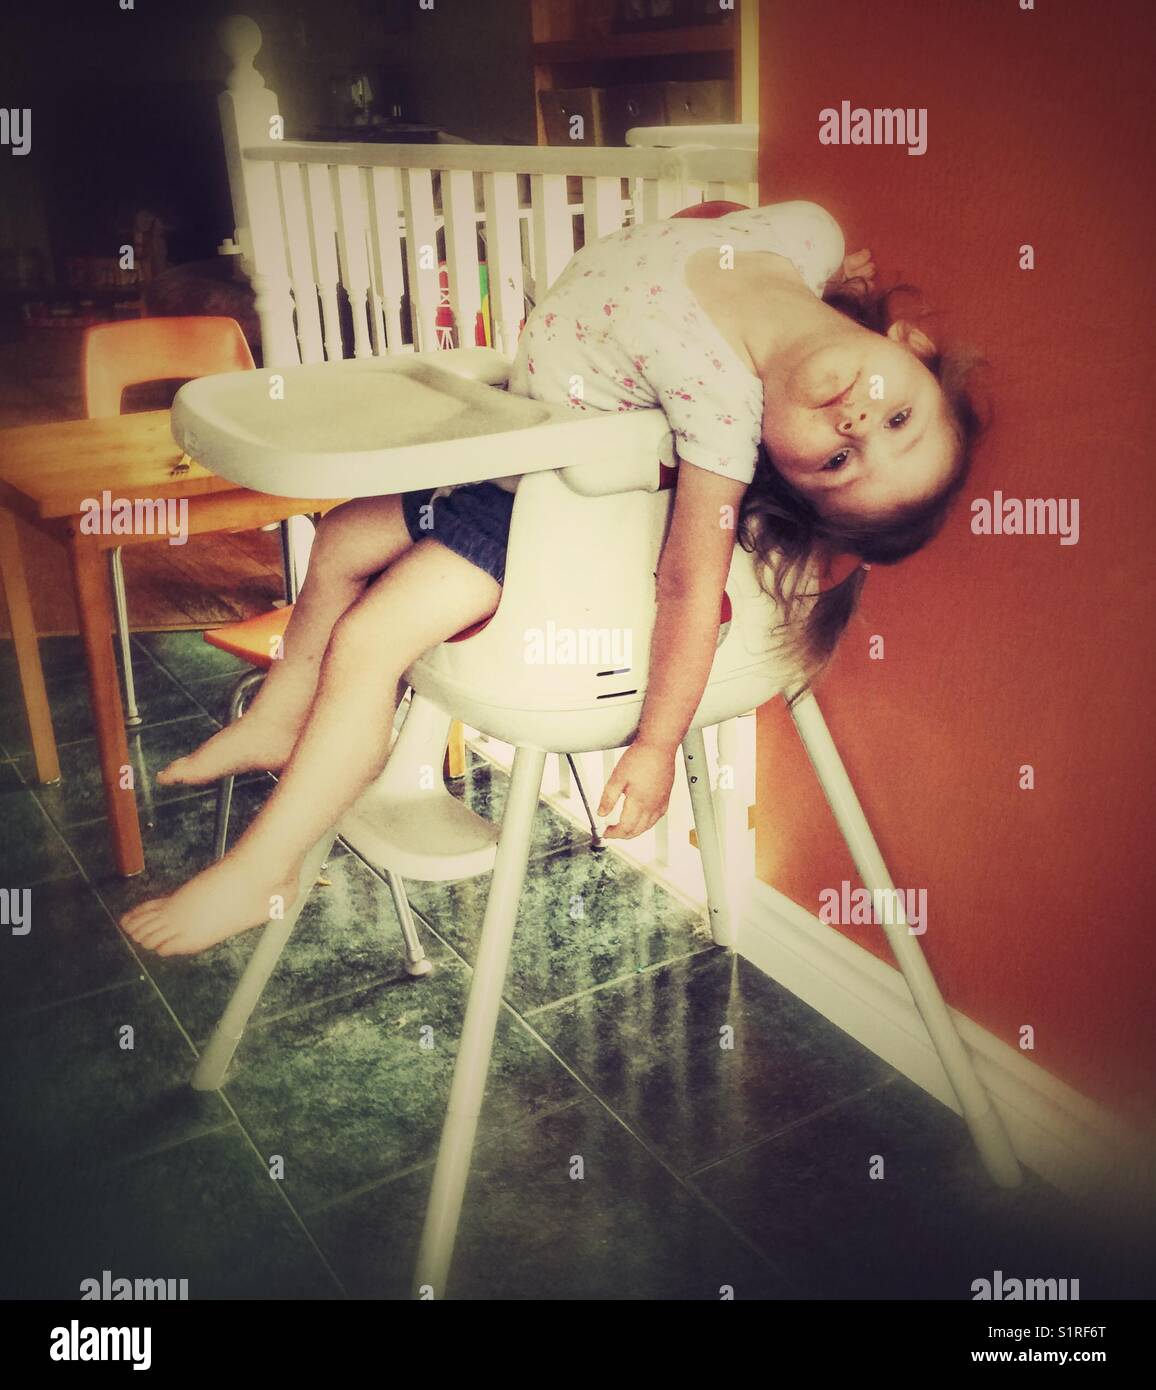 Bébé fille ennuie ferme dans sa chaise haute Banque D'Images